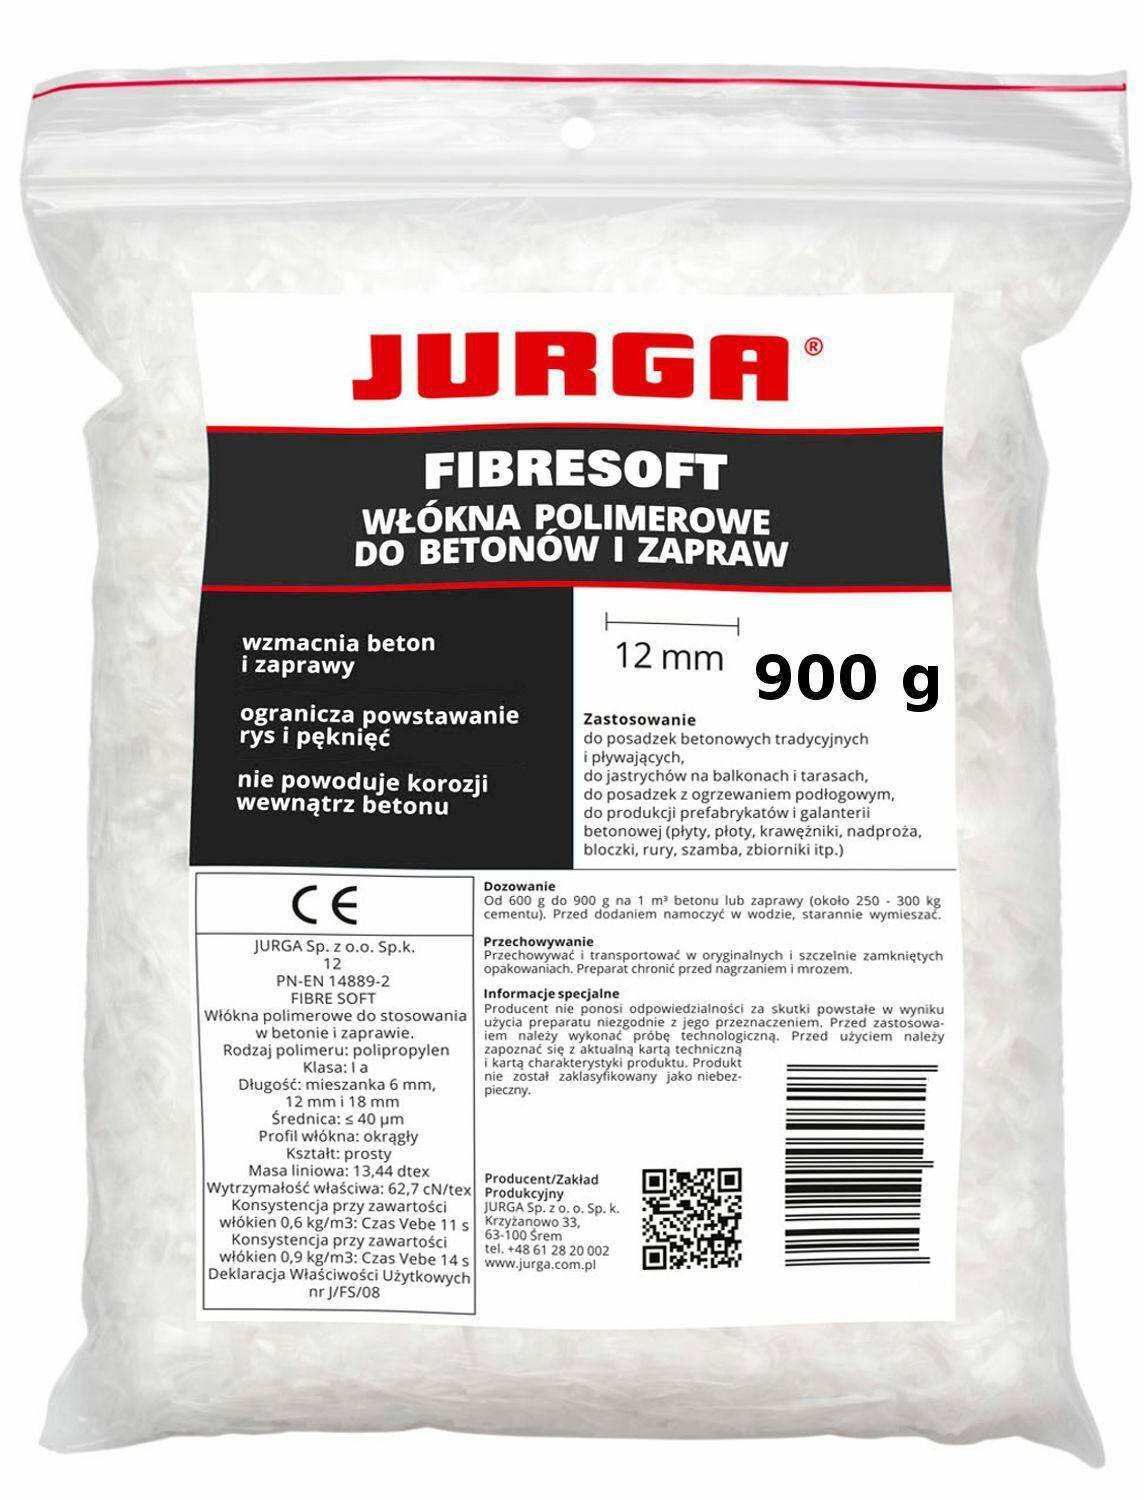 JURGA Fibresoft 900g